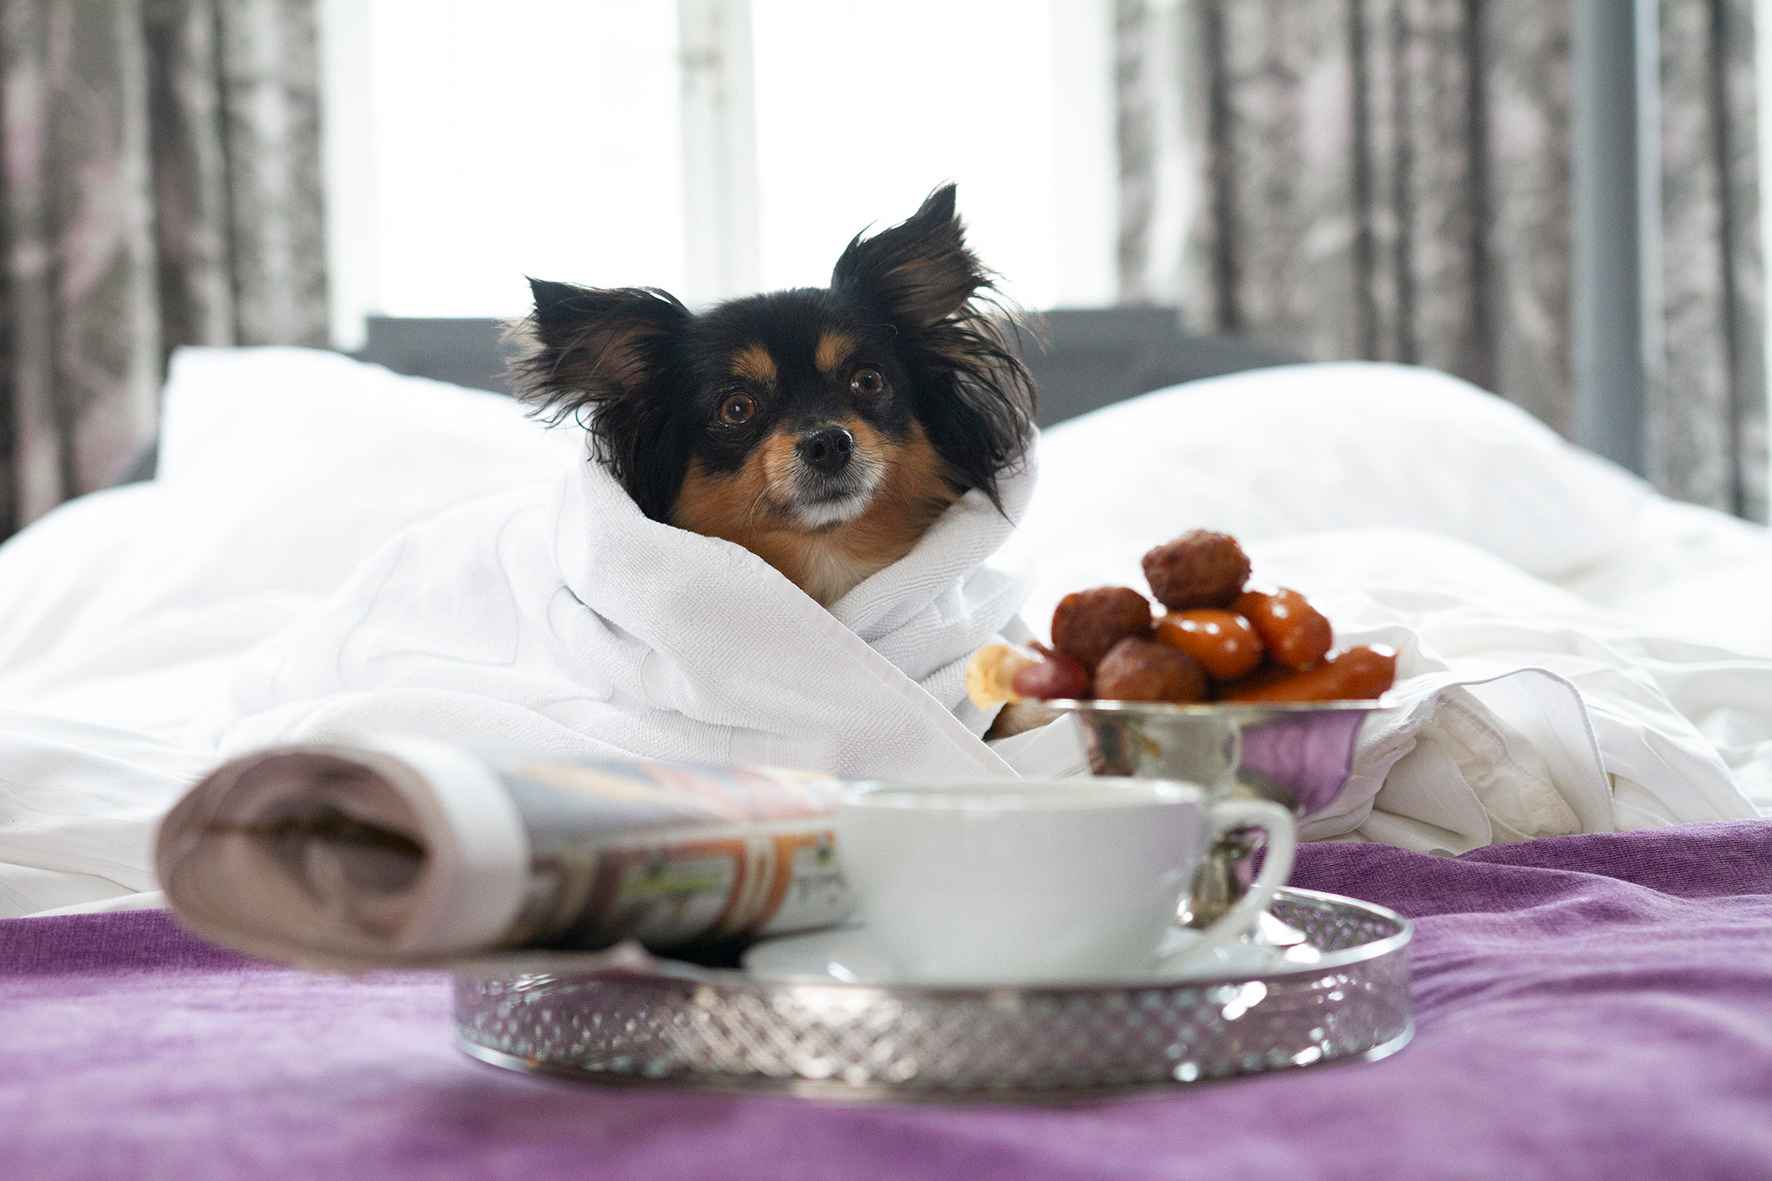 Een kleine hond is comfortabel in beddengoed gewikkeld en zit op een hotelbed. Voor de hond staan een schaal met worstjes en een dienblad met een koffiekopje en een krant.